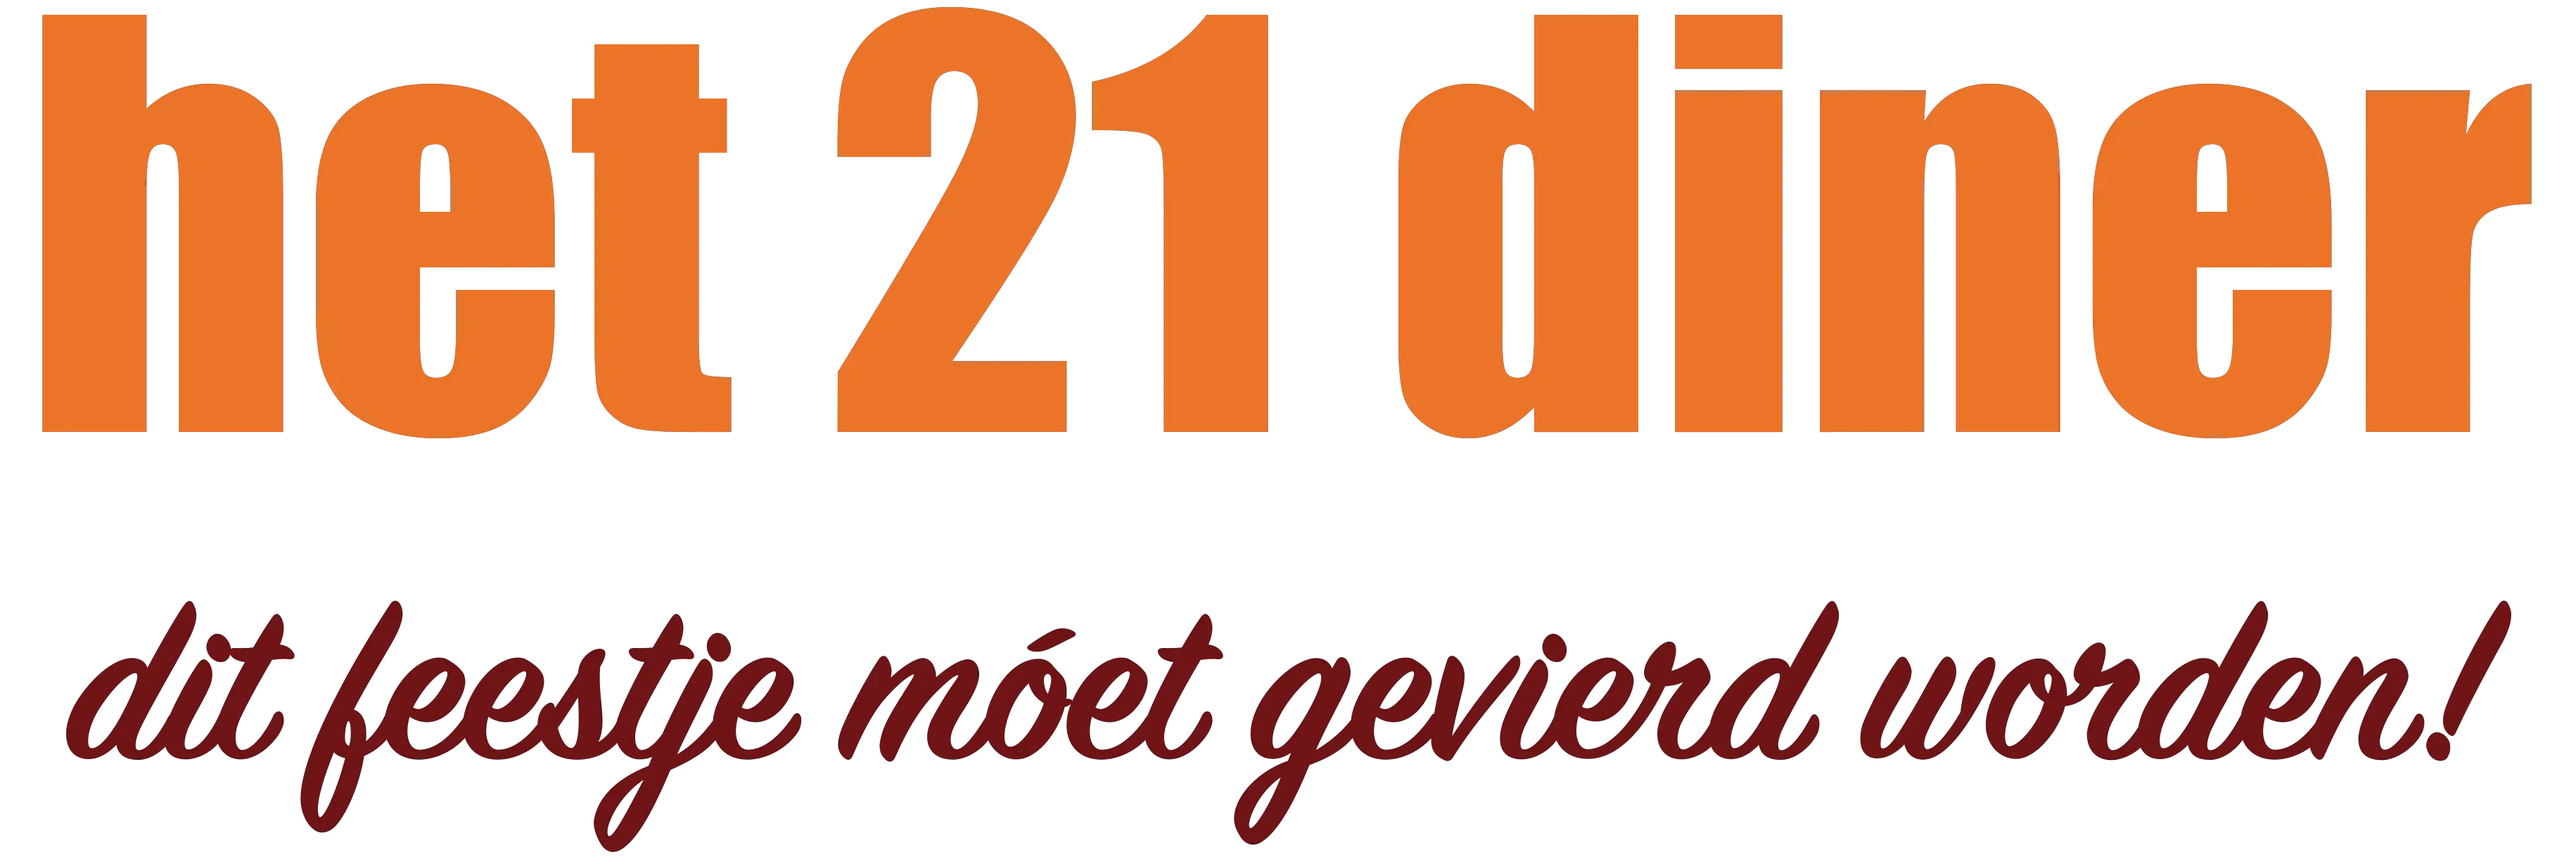 Verwonderlijk Uitnodiging ontwerpen en versturen aan jouw gasten | het21diner.nl PL-93